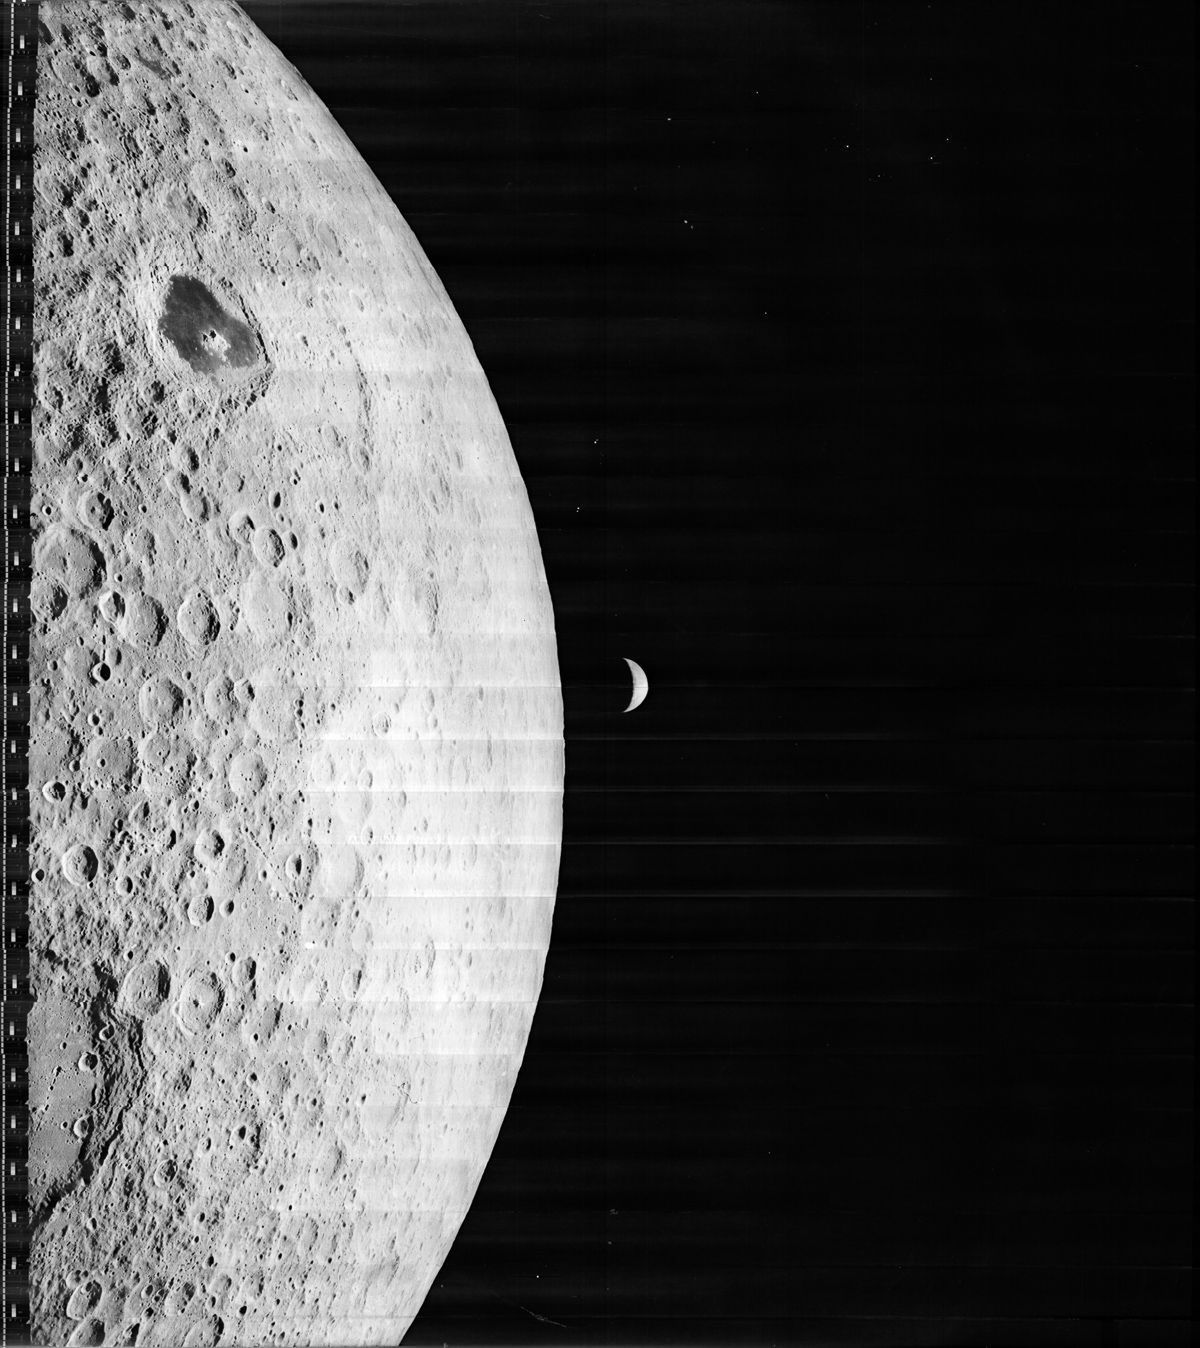 Misja Lunar Orbiter 1 zakończyła się 29 października 1966 roku, gdy uderzyła ona w powierzchnię na wschód od Morza Moskiewskiego po niewidocznej z Ziemi stronie Księżyca. W 2008 roku NASA powołała Lunar Orbiter Image Recovery Project. Przedsięwzięcie miało na celu odnowienie zdjęć za pomocą współczesnych metod, dzięki czemu ujawniono niewidzialne wcześniej szczegóły.